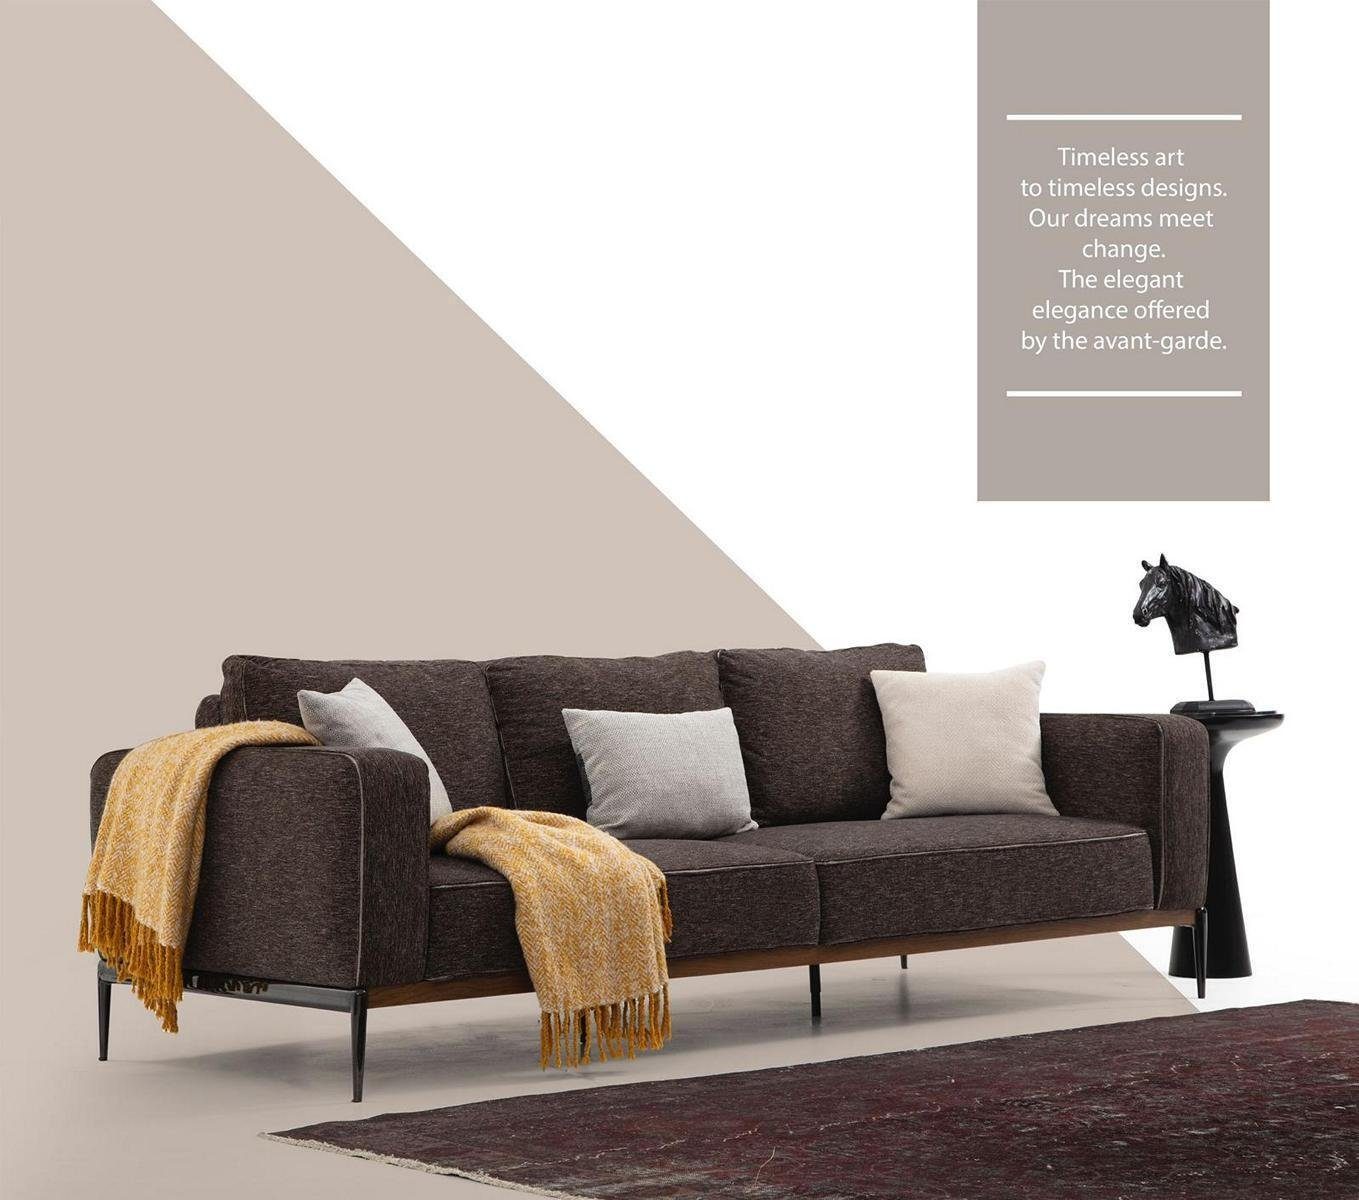 JVmoebel 3-Sitzer Dreisitzer Sofa 3 Sitzer Stoff Modern Sofas Design Wohnzimmer Grau, 1 Teile, Made in Europa